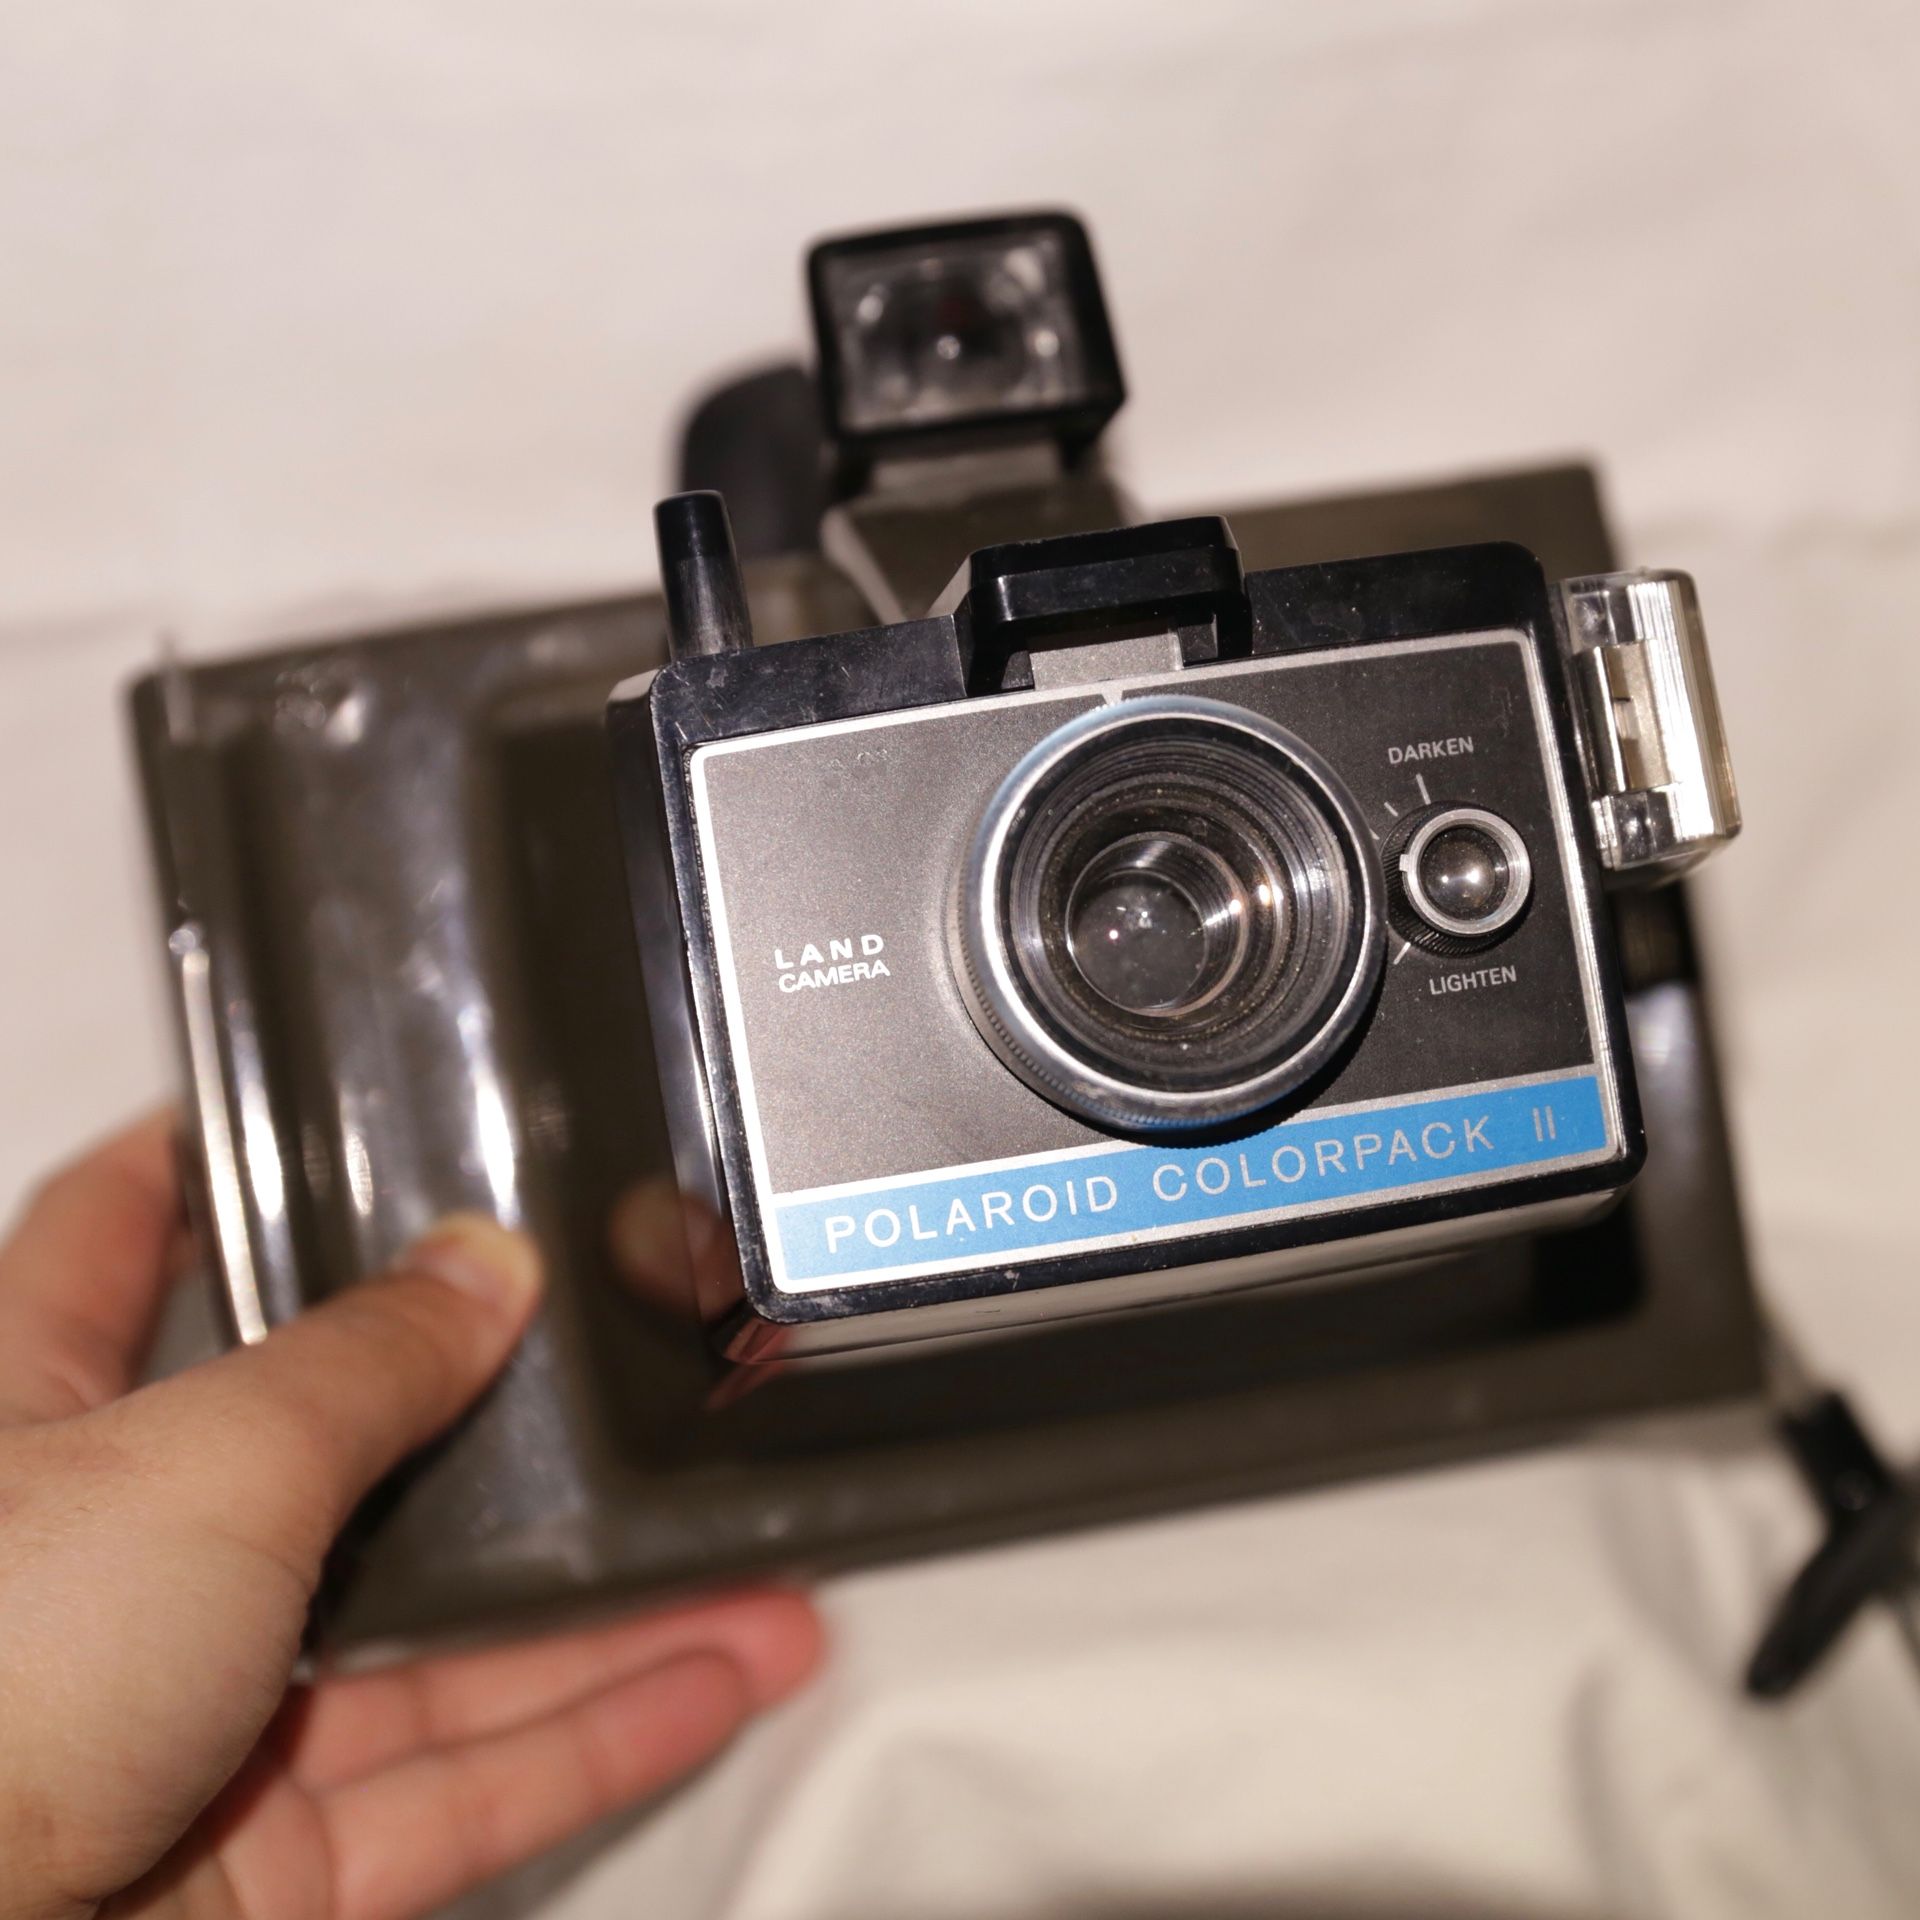 Polaroid Colorpack II Instant Film Camera